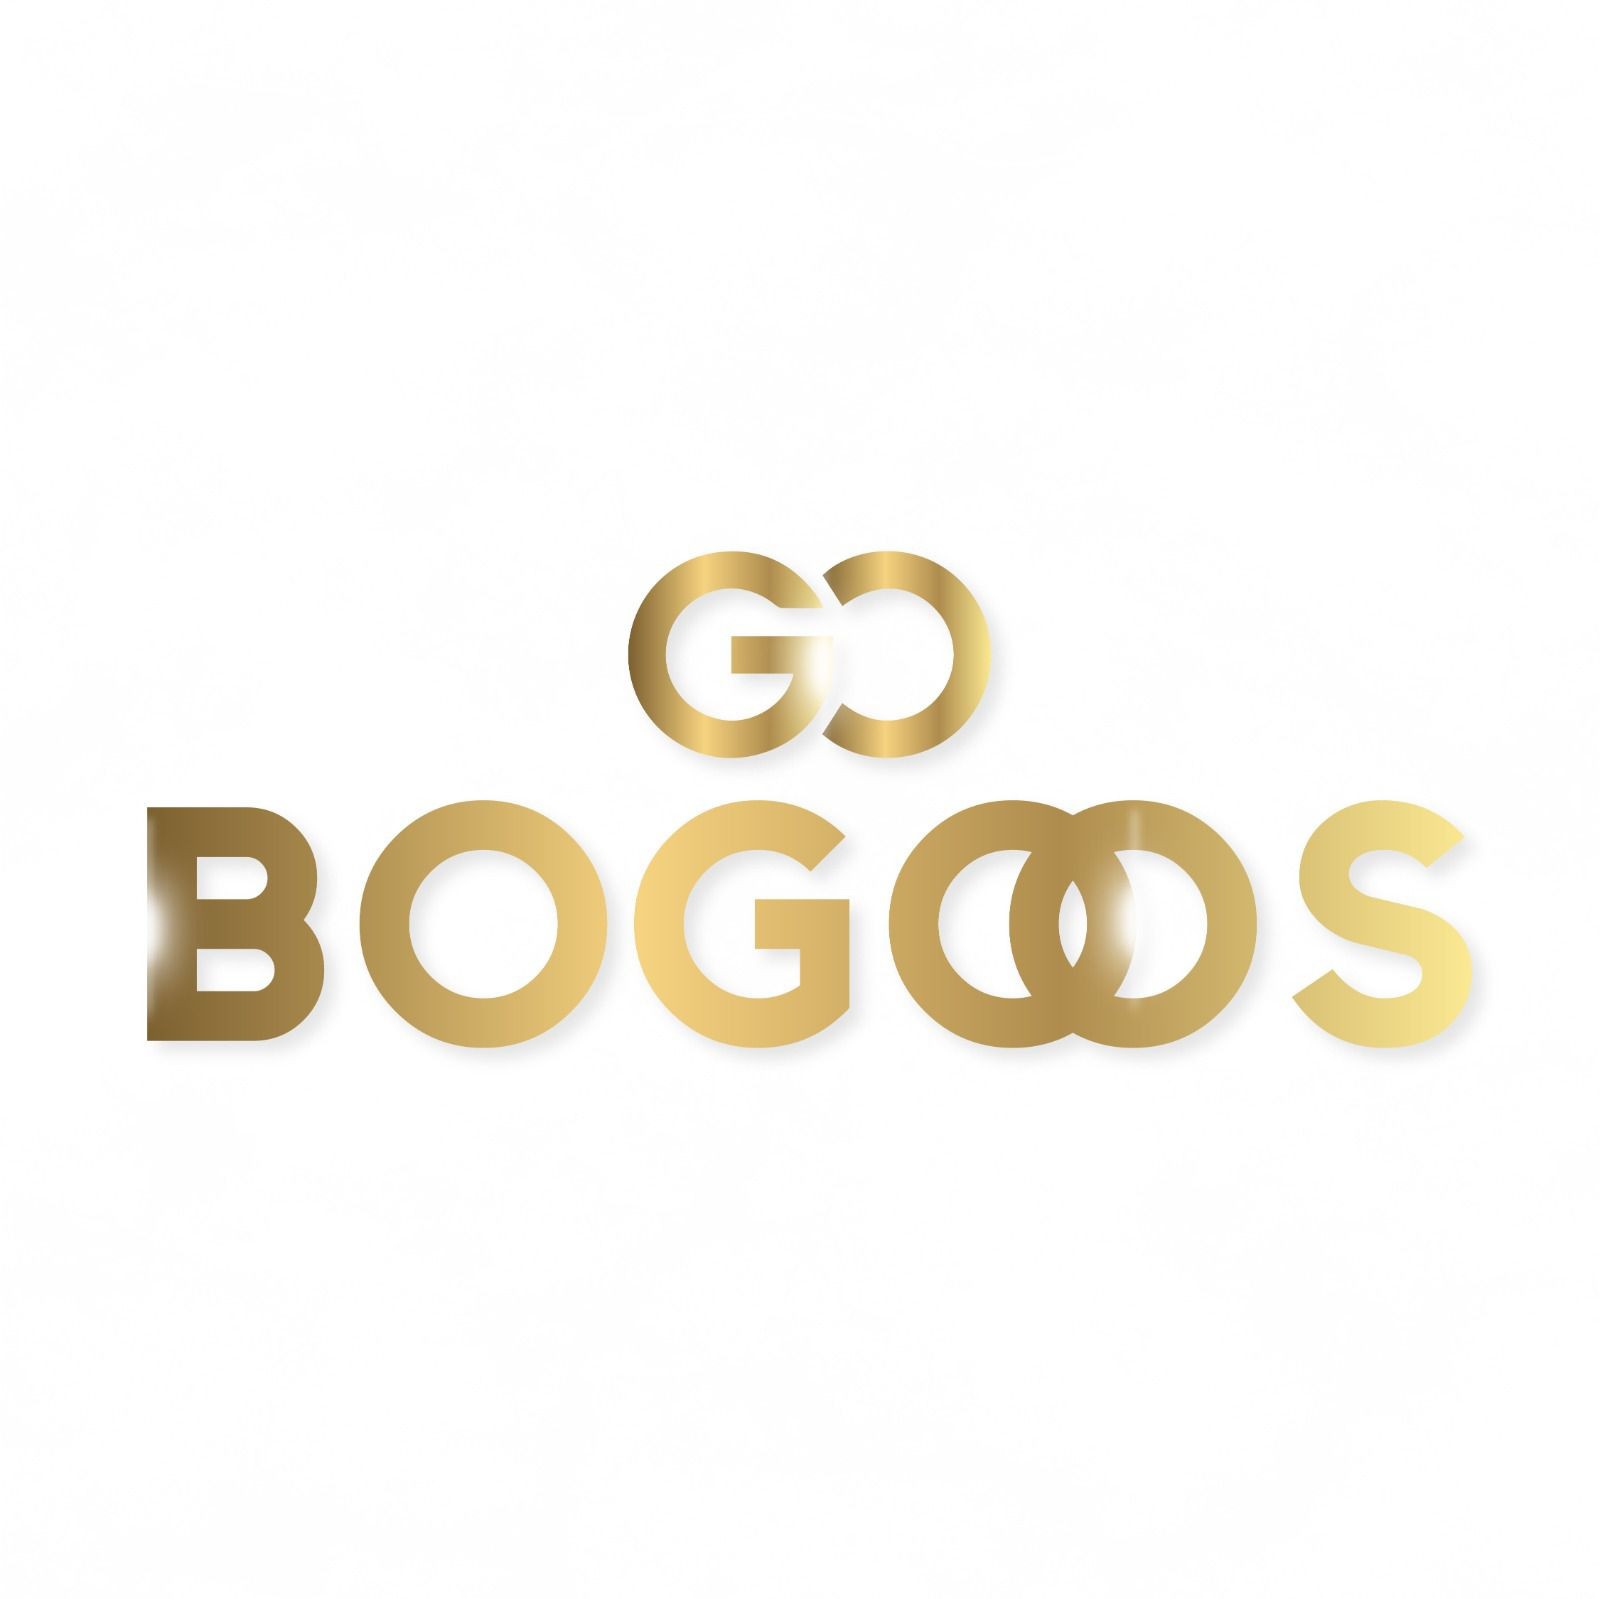 Bogoos